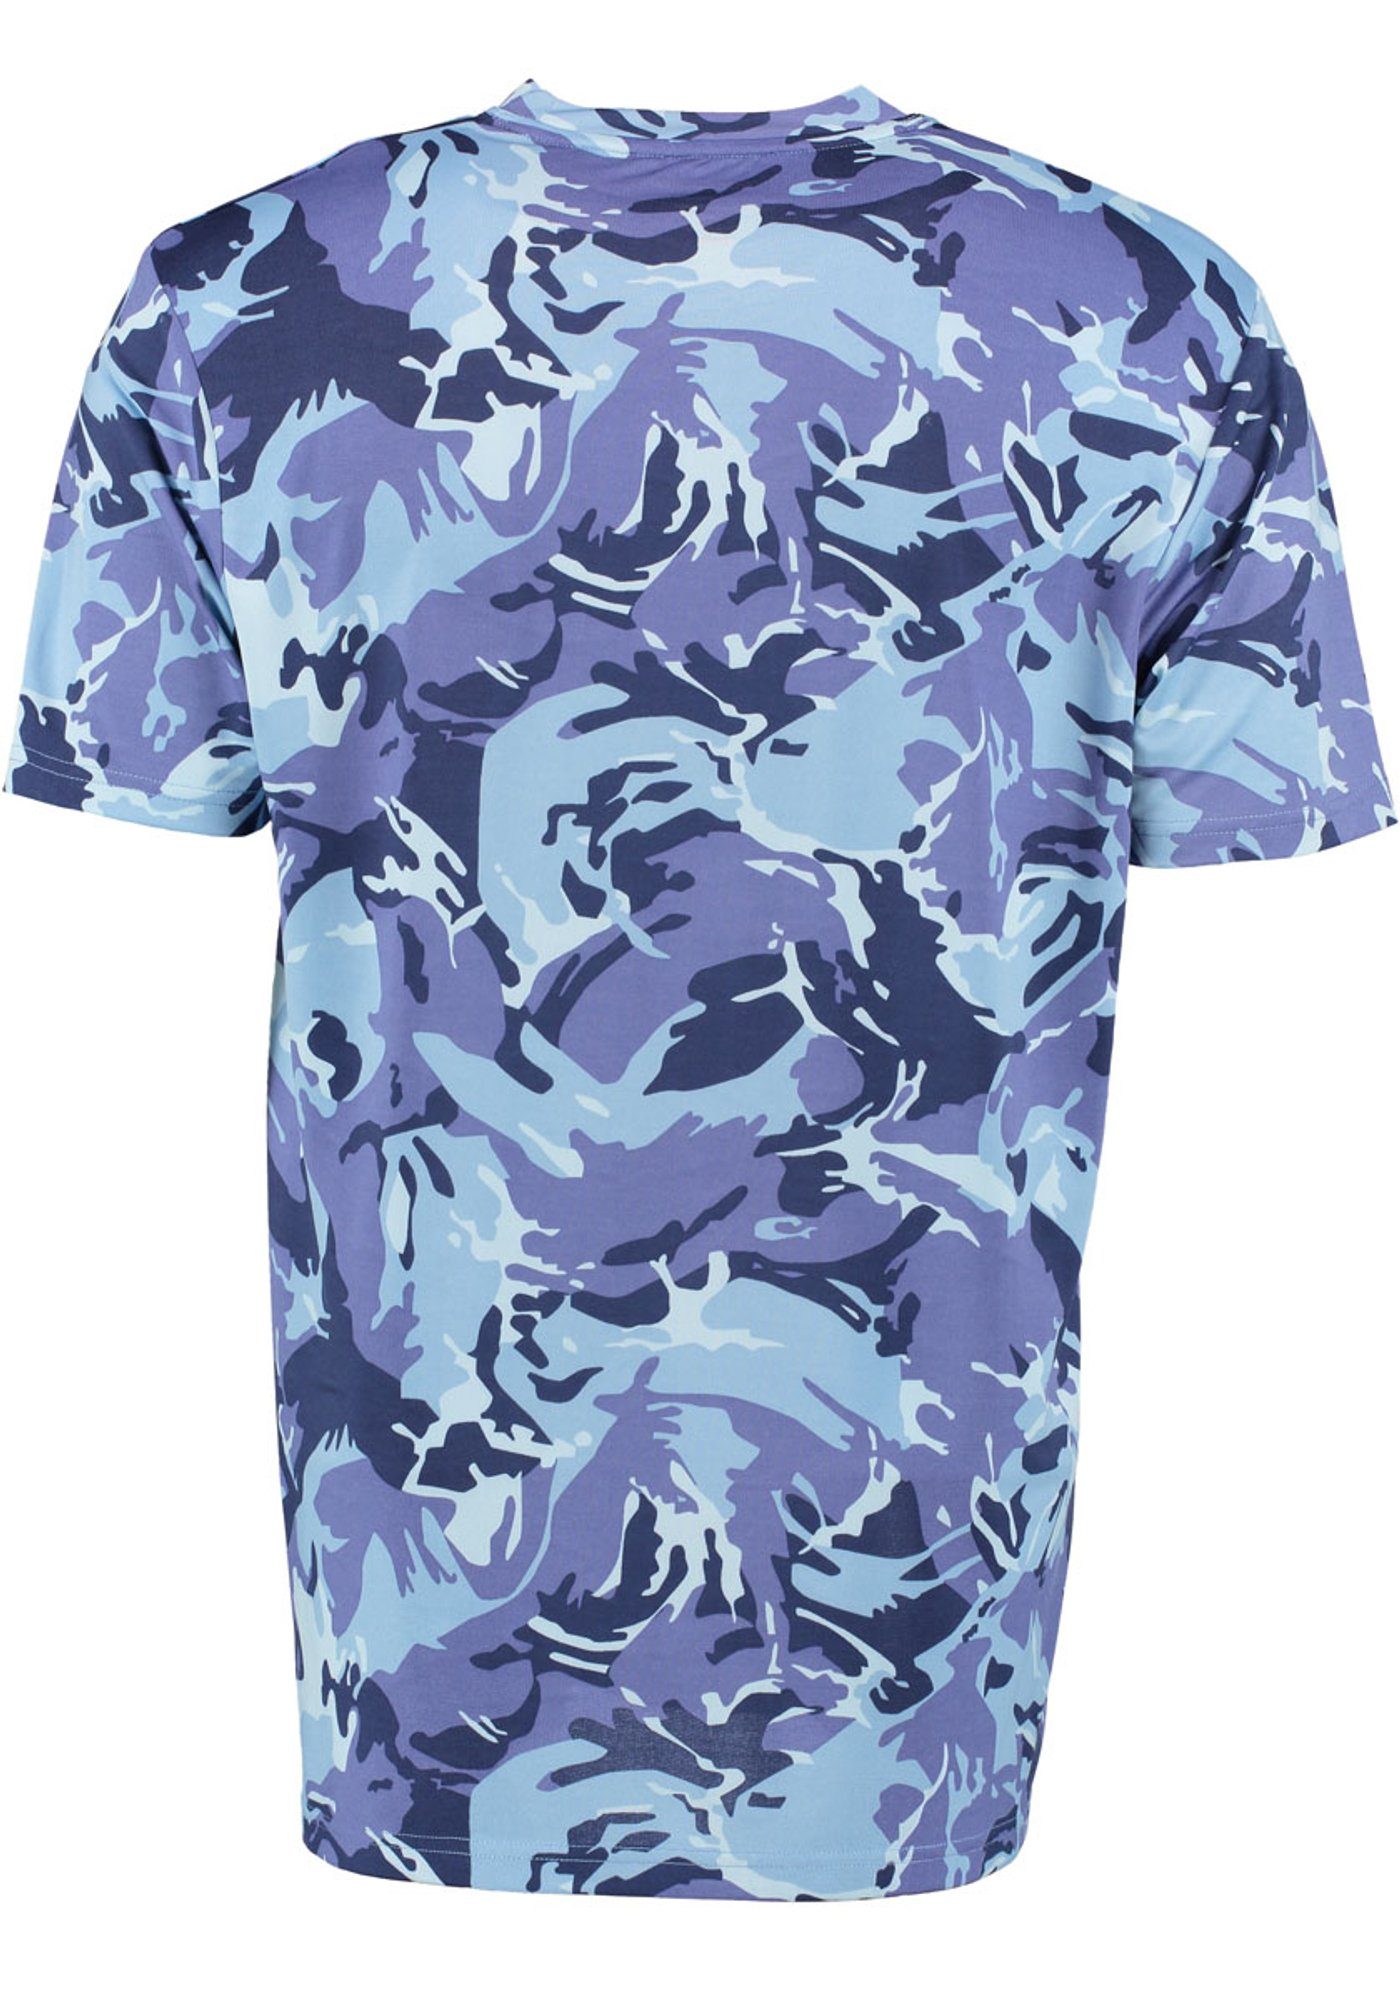 Collins Tom Kurzarmshirt kornblau mit T-Shirt Allover-Camouflage-Druck Okewa